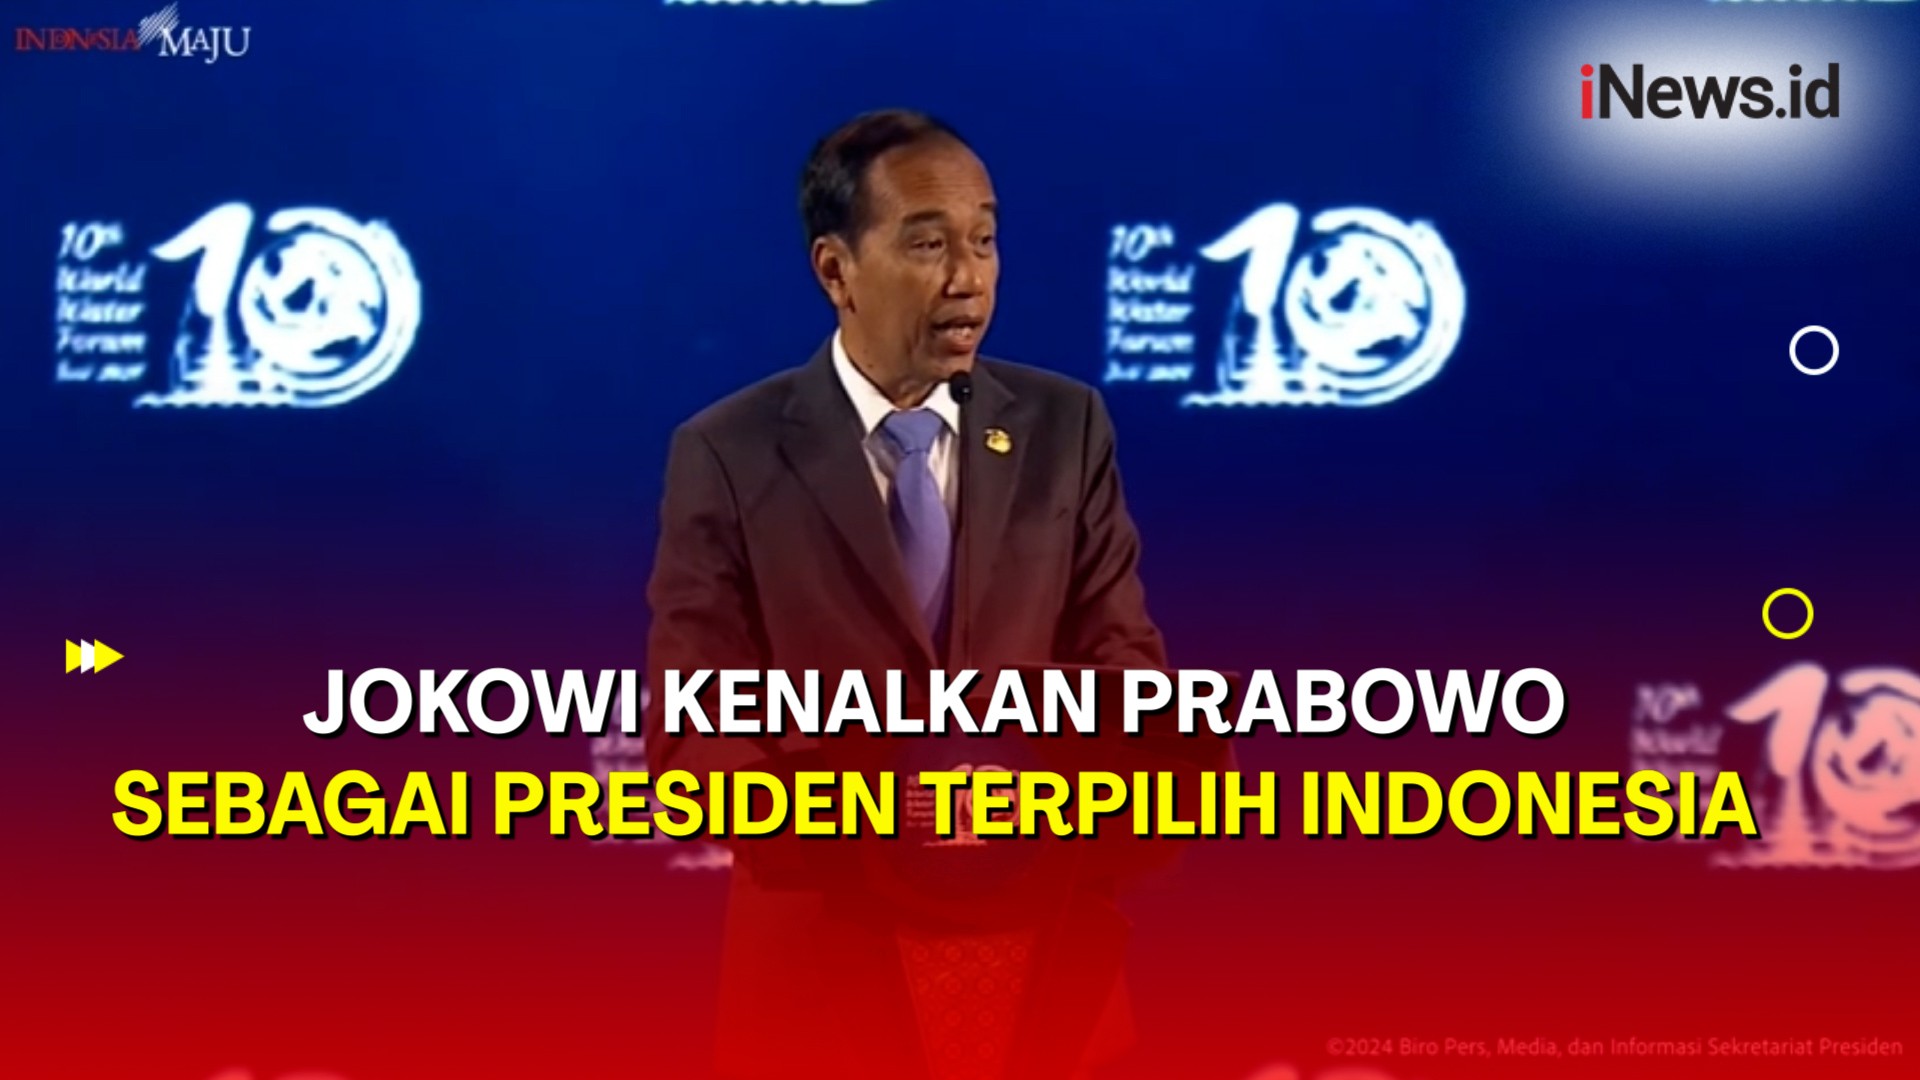 Kala Jokowi Kenalkan Prabowo sebagai Presiden Terpilih Indonesia saat Buka WWF ke-10 di Bali